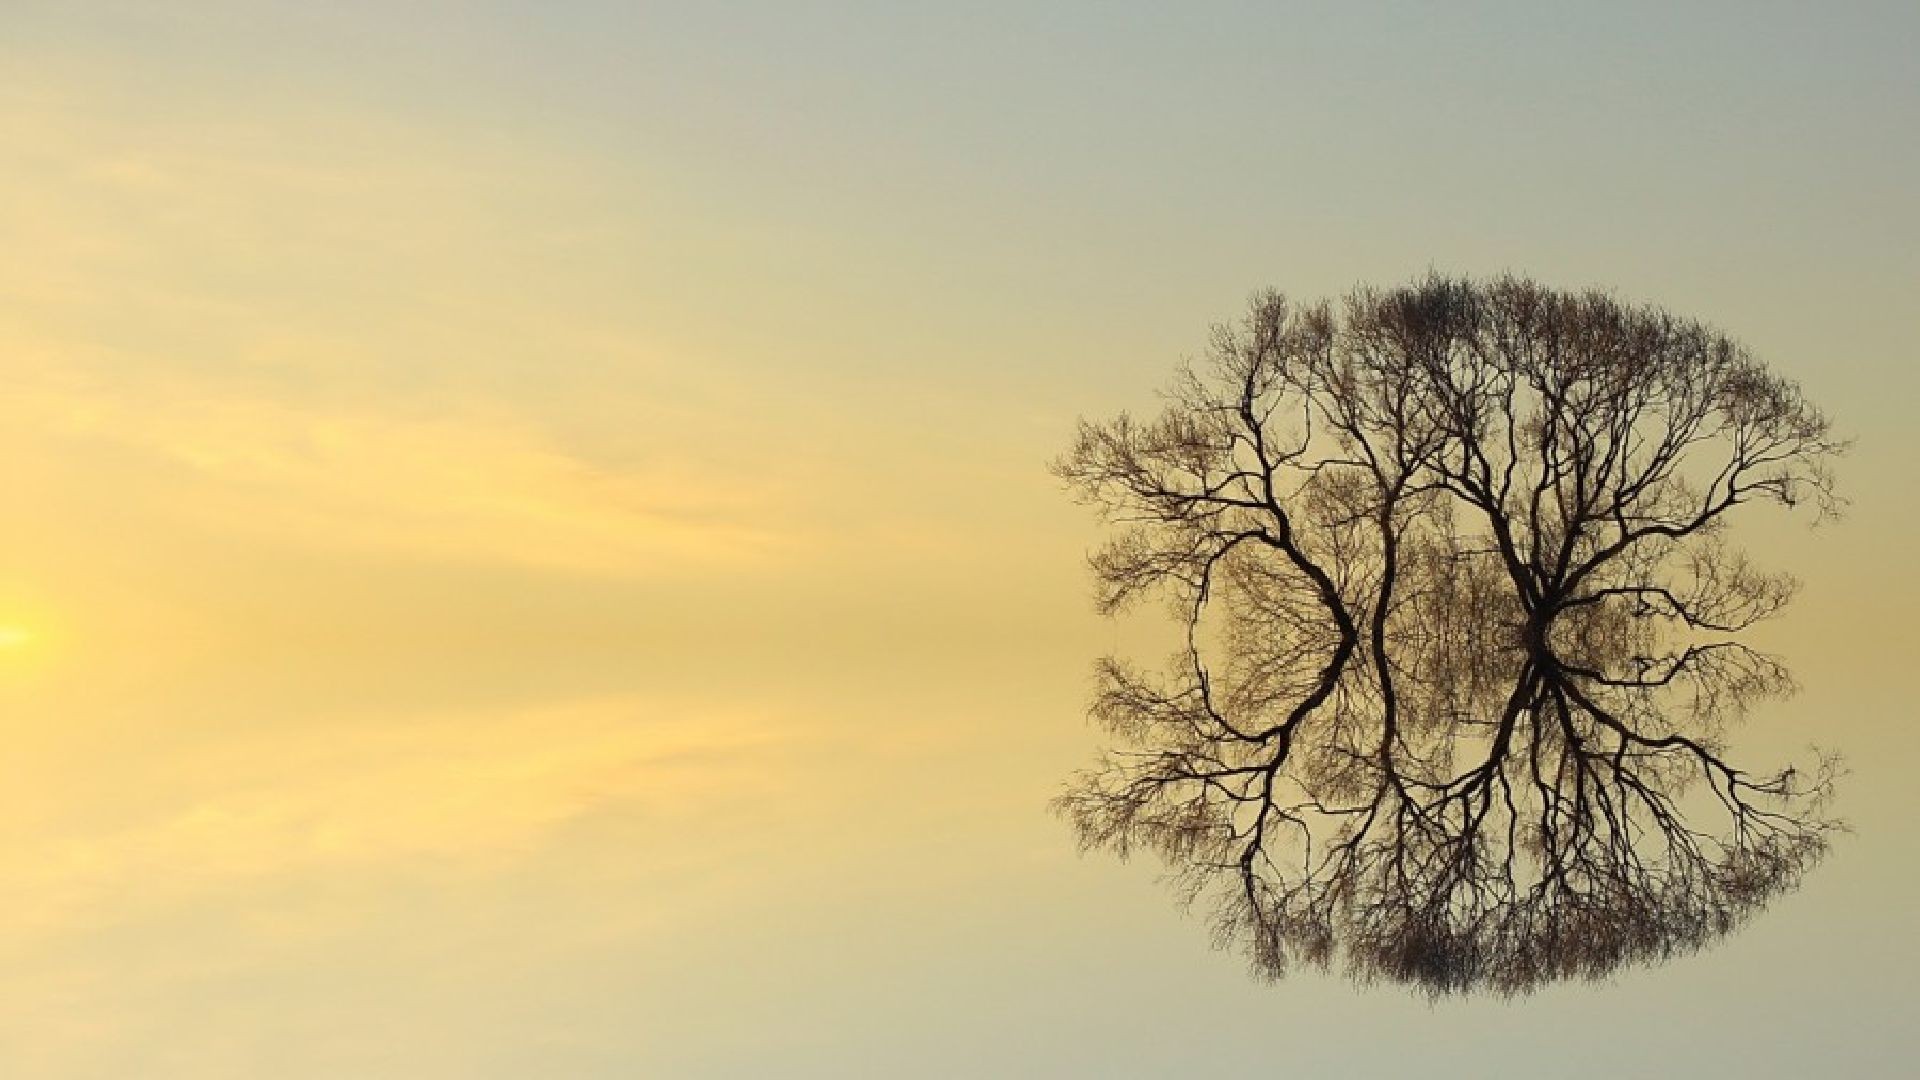 Окружающее спокойно. Дерево души. Дерево отражение. Отражение деревьев в воде. Деревья небо фон для отражения.